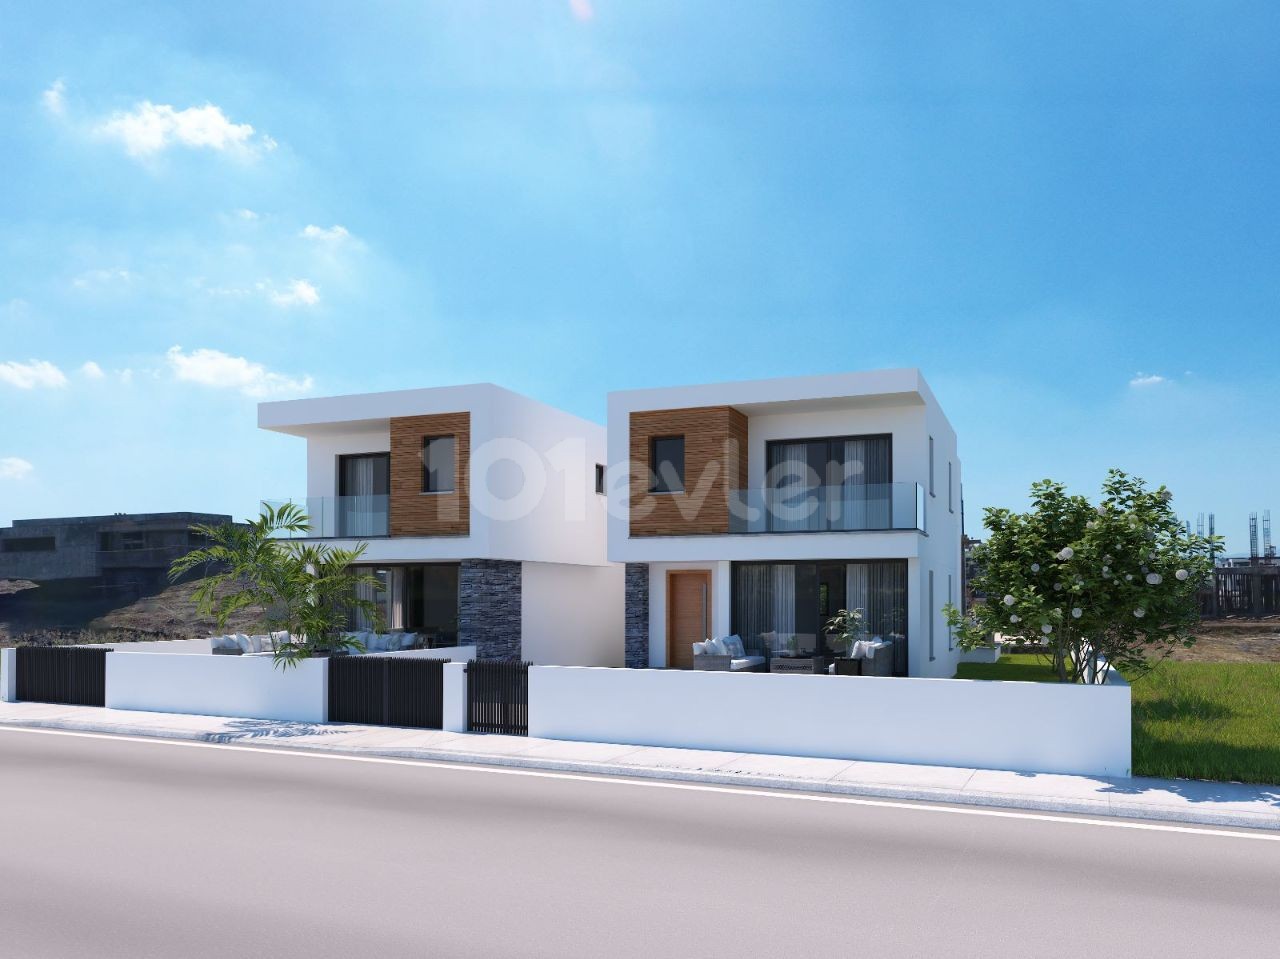 Detached House For Sale in Gönyeli, Nicosia